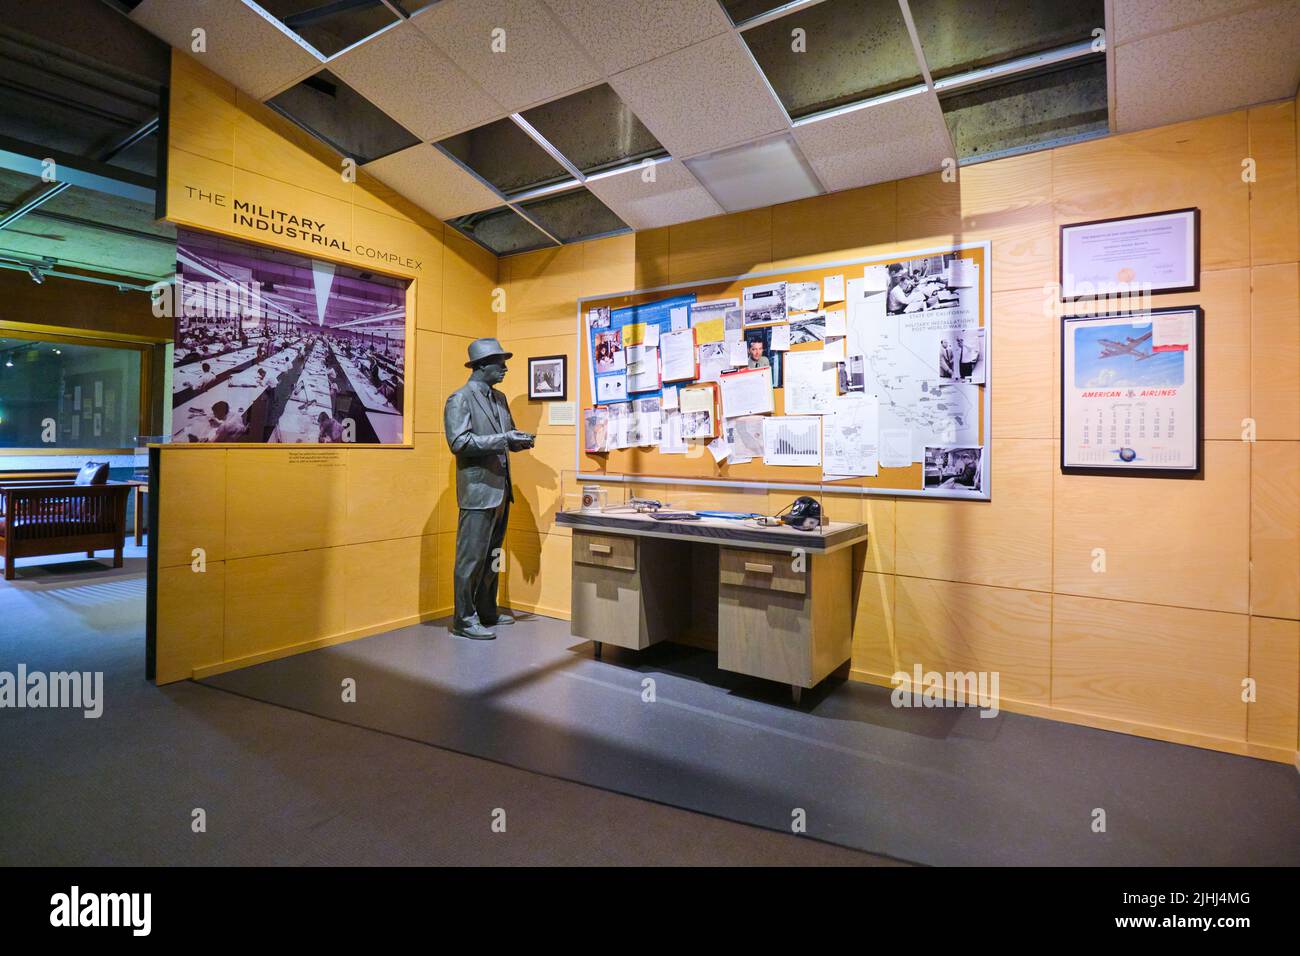 Esposizione del commercio dell'industria di difesa, conosciuto come il complesso industriale militare. All'Oakland Museum of Art di Oakland, California. Foto Stock